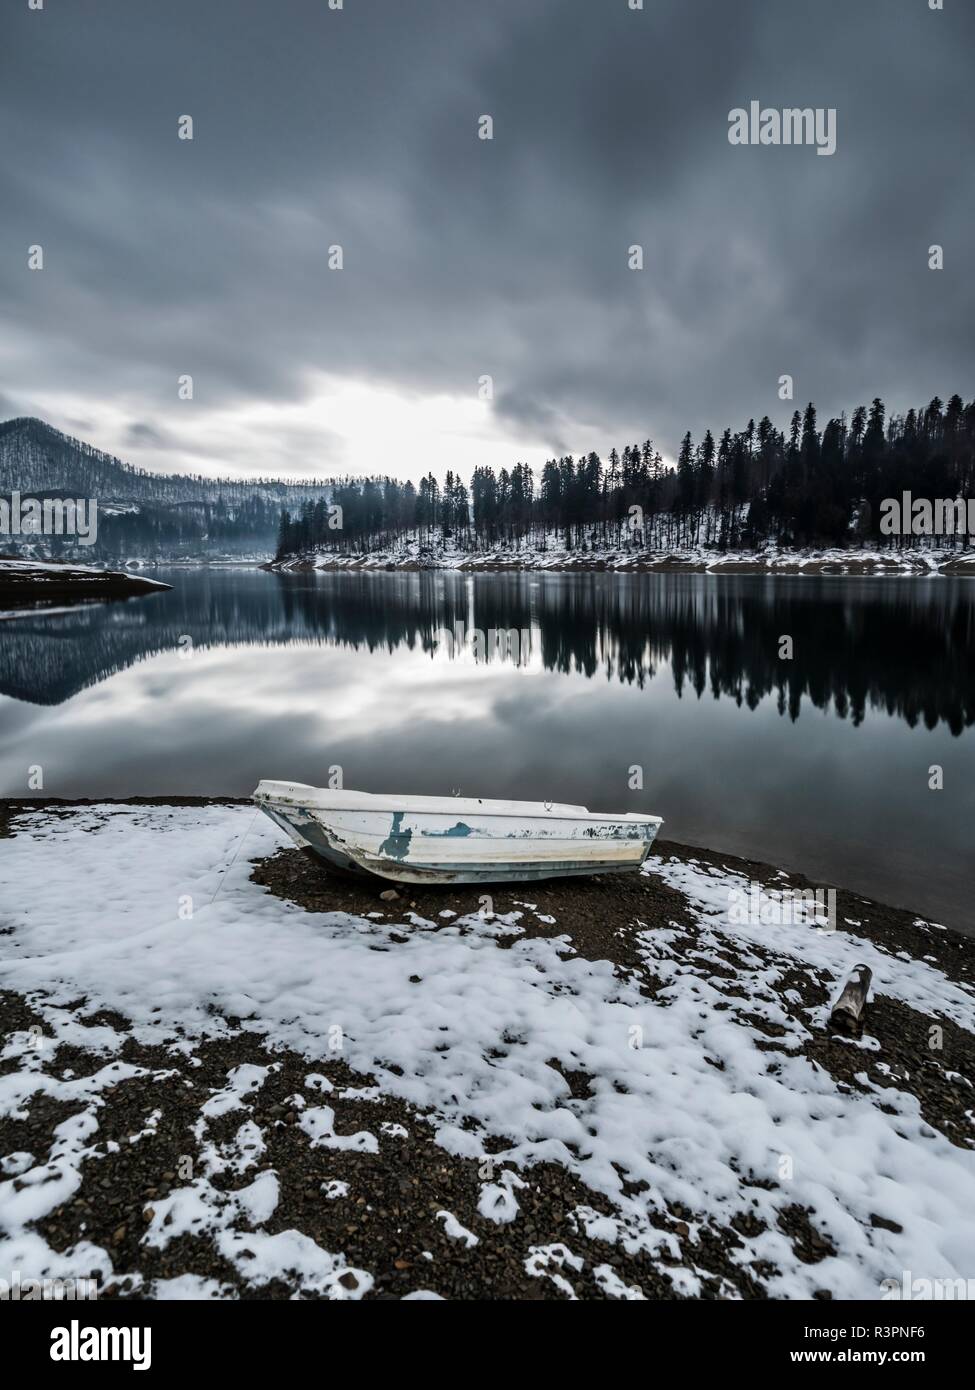 Una lunga esposizione inizio inverno neve in Europa Croazia Lokve lago di destinazione una barca che giace a terra ormeggiato con fune Foto Stock